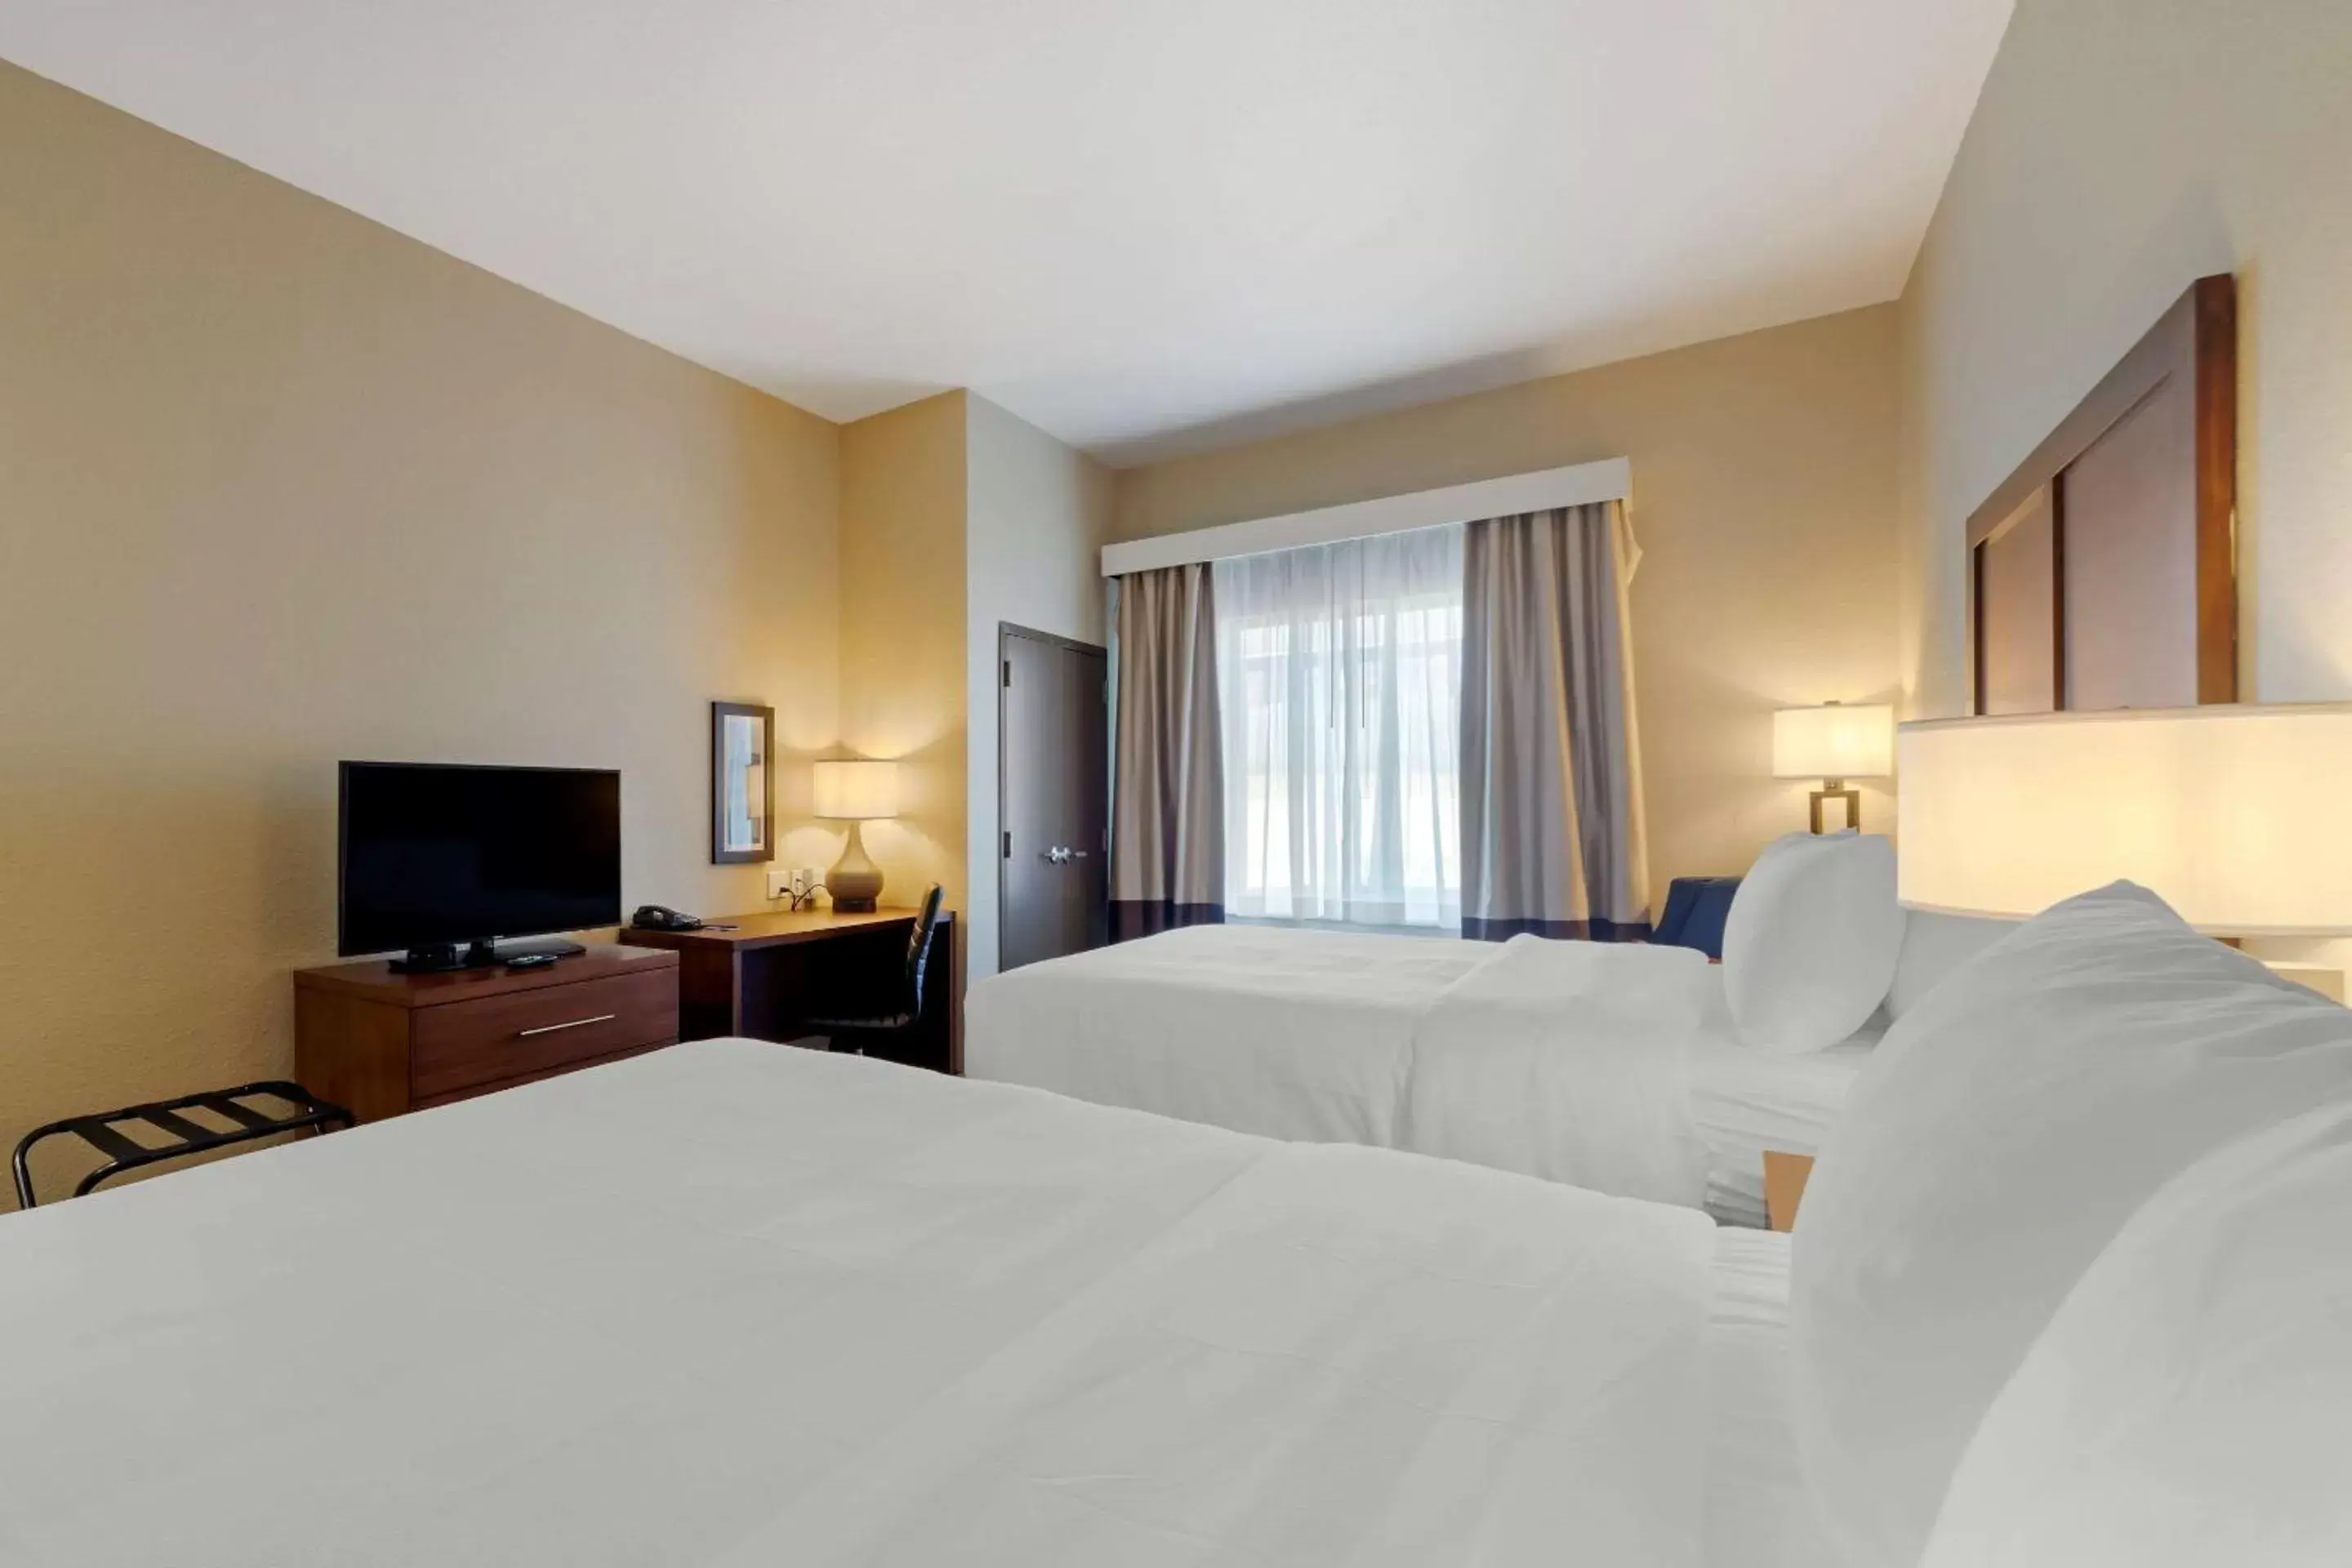 Bed in Comfort Inn & Suites Harrah